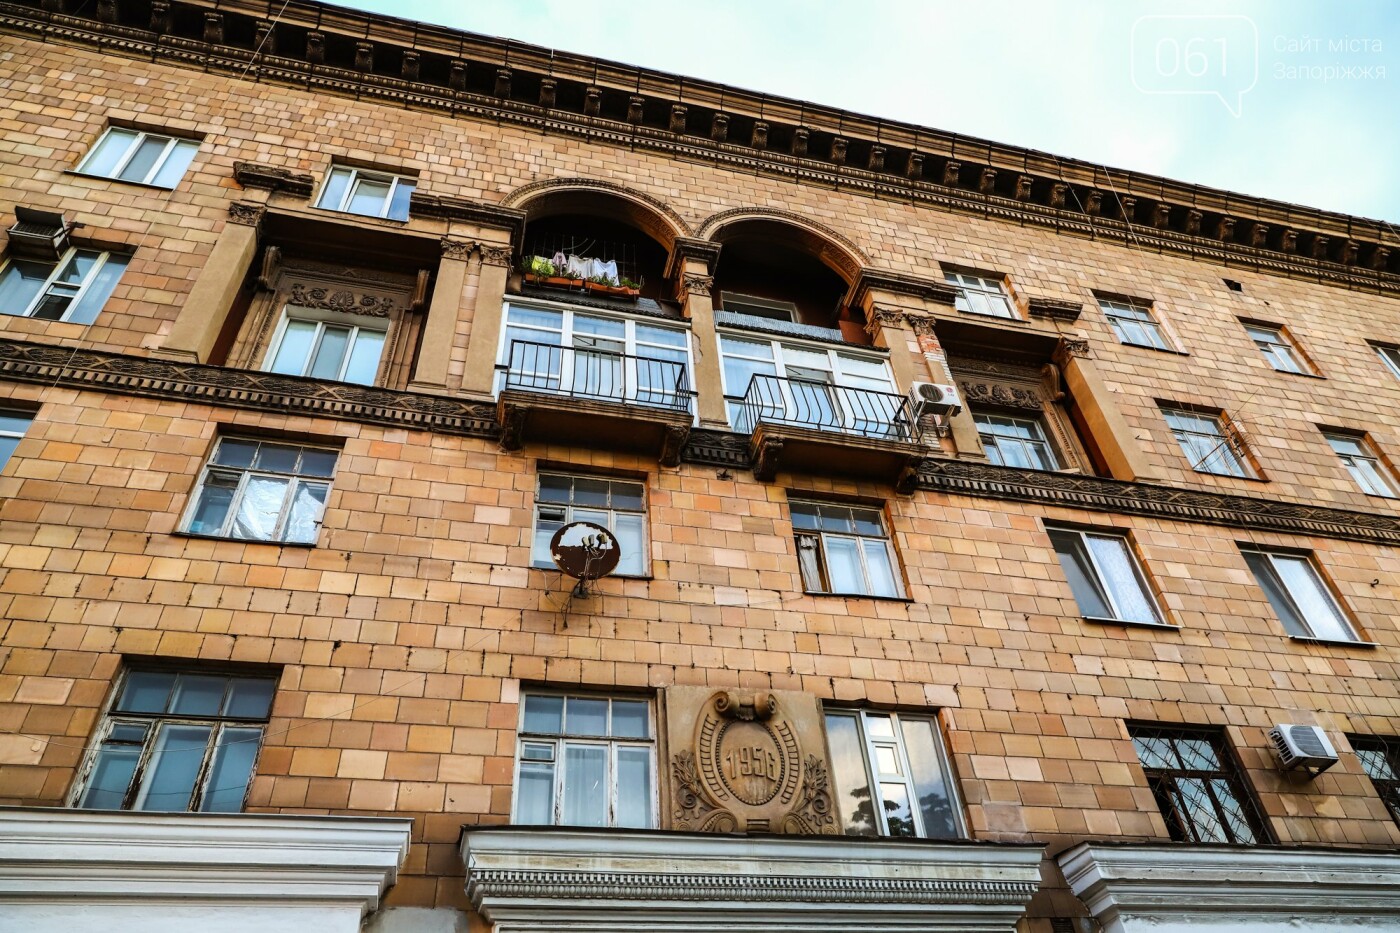 Дом ли. Дом союзов Барнаул отреставрировали фасад. В Инте отреставрировали фасад дома. Проспект мира 116 фото фасада дома. Какая фирма реставрировала фасад Асторию 2020.